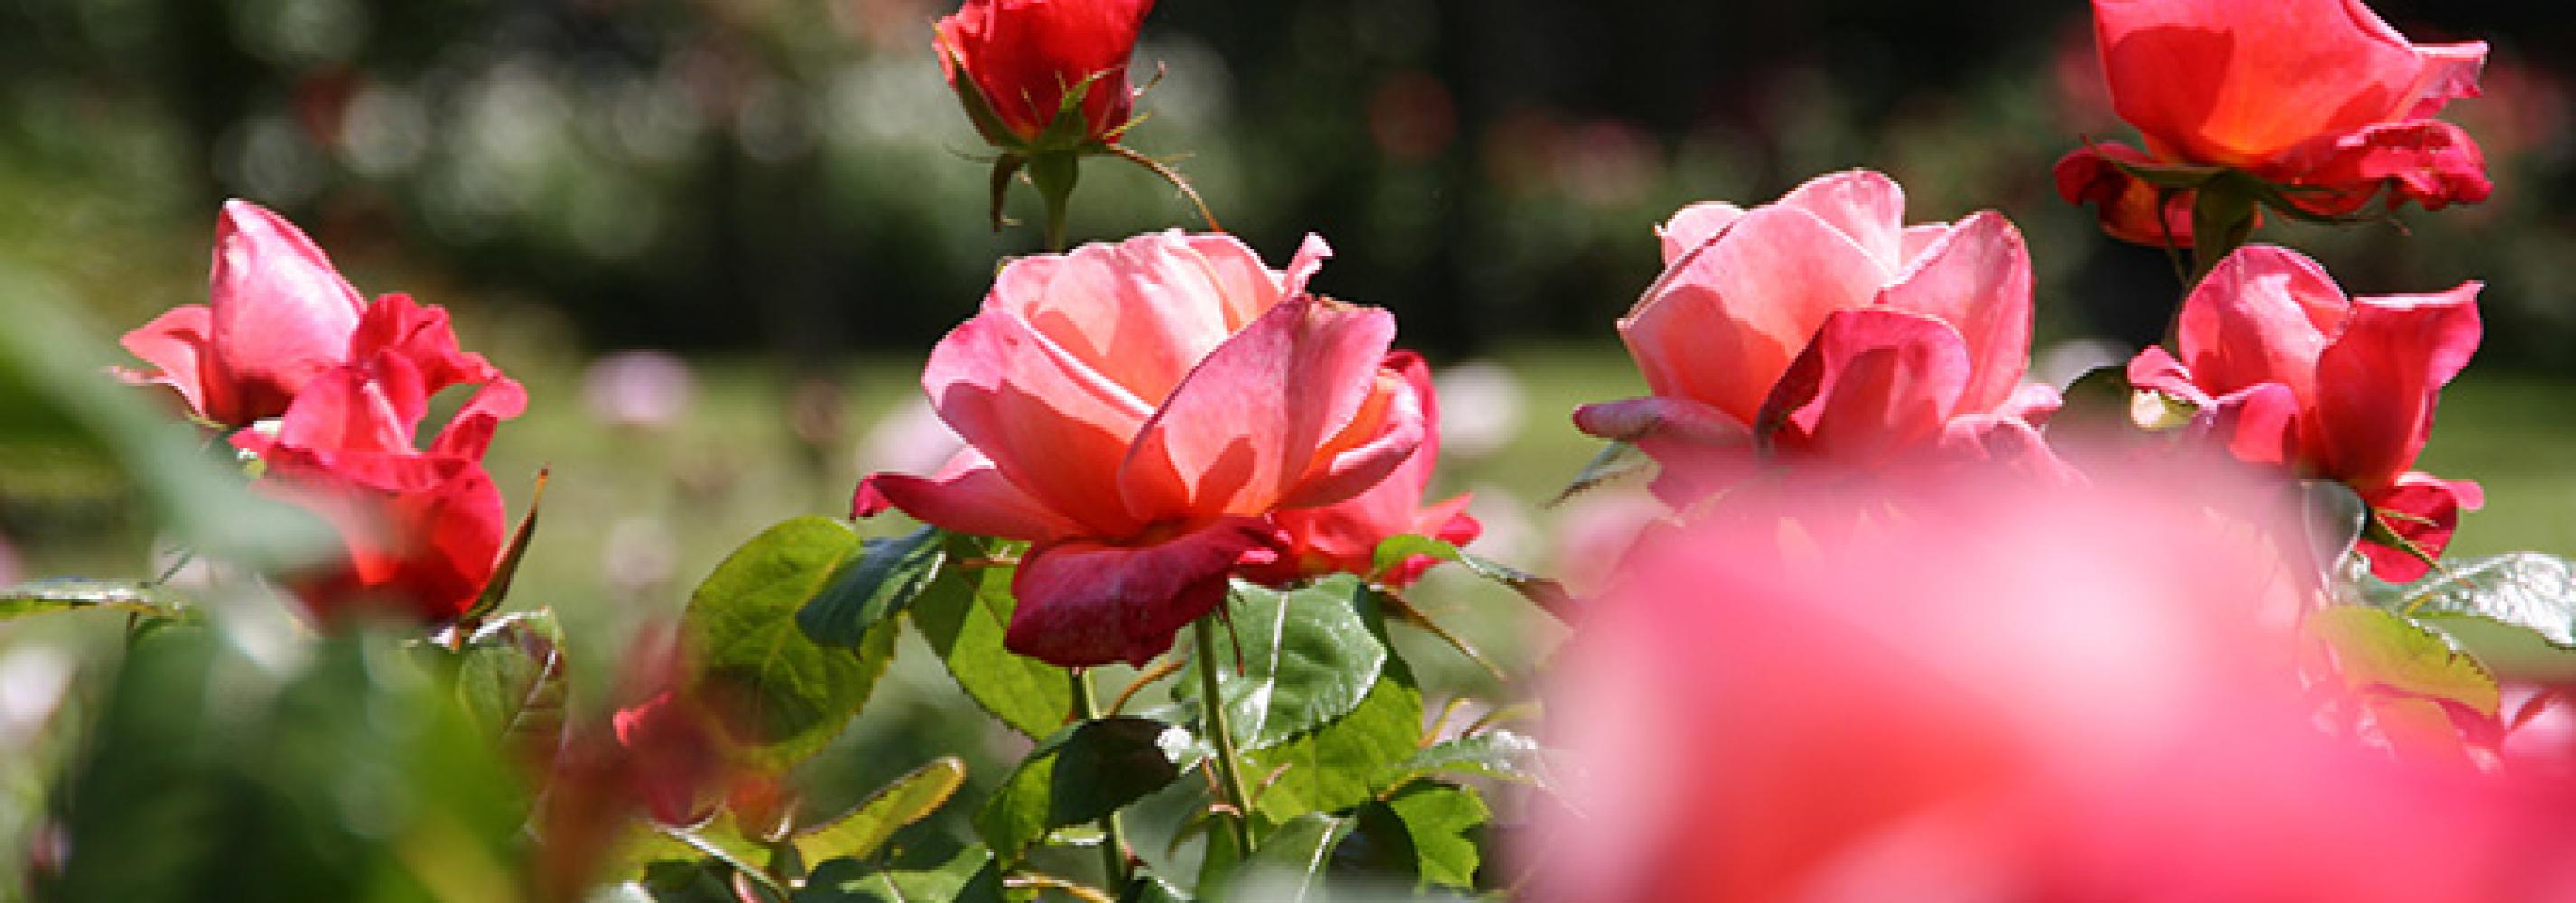 Darwin rose garden